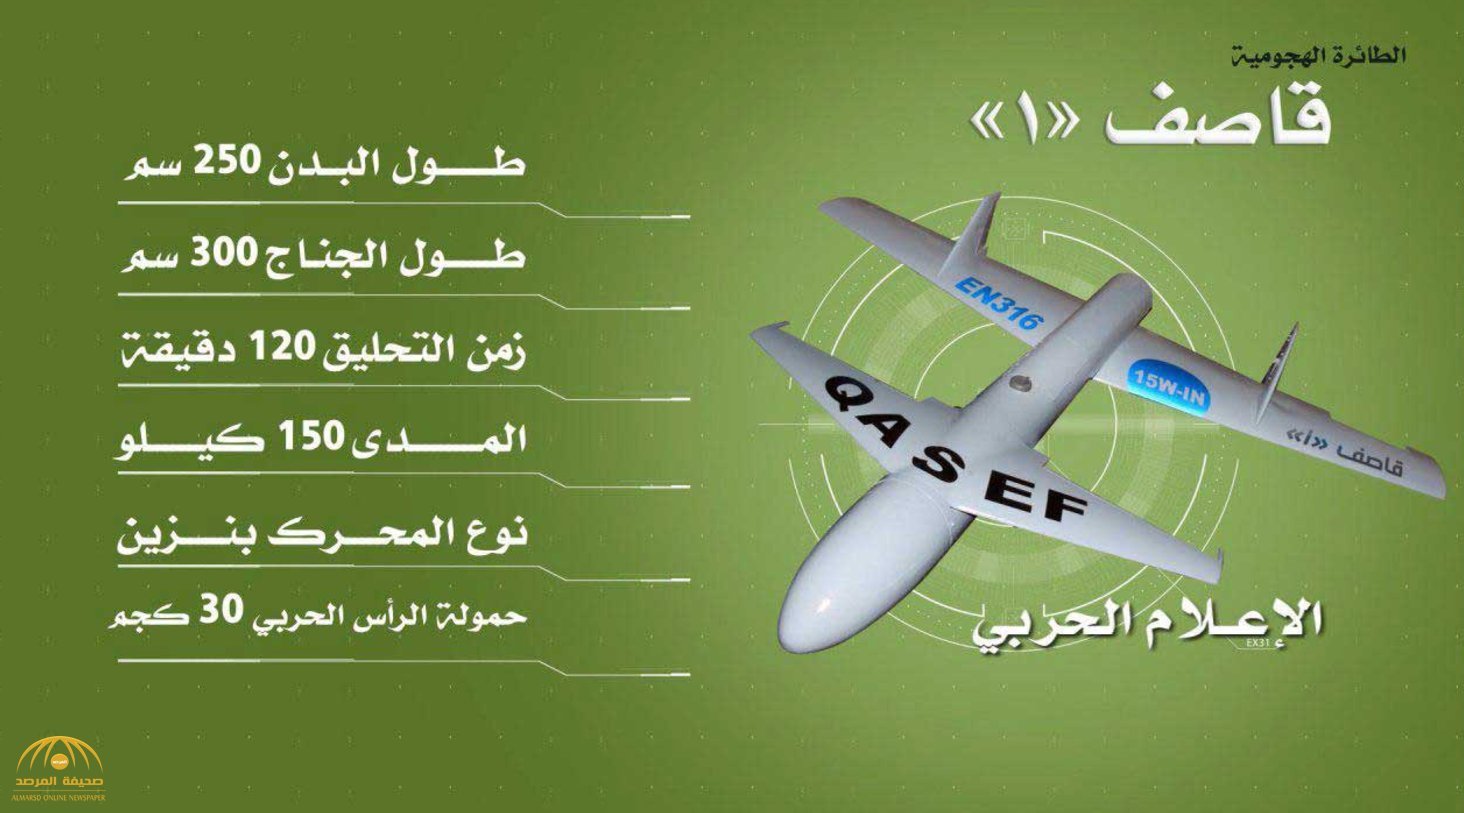 كشف تفاصيل سرية عن  مصدر صناعة الطائرات بدون طيار التي بحوزة الحوثيين في اليمن